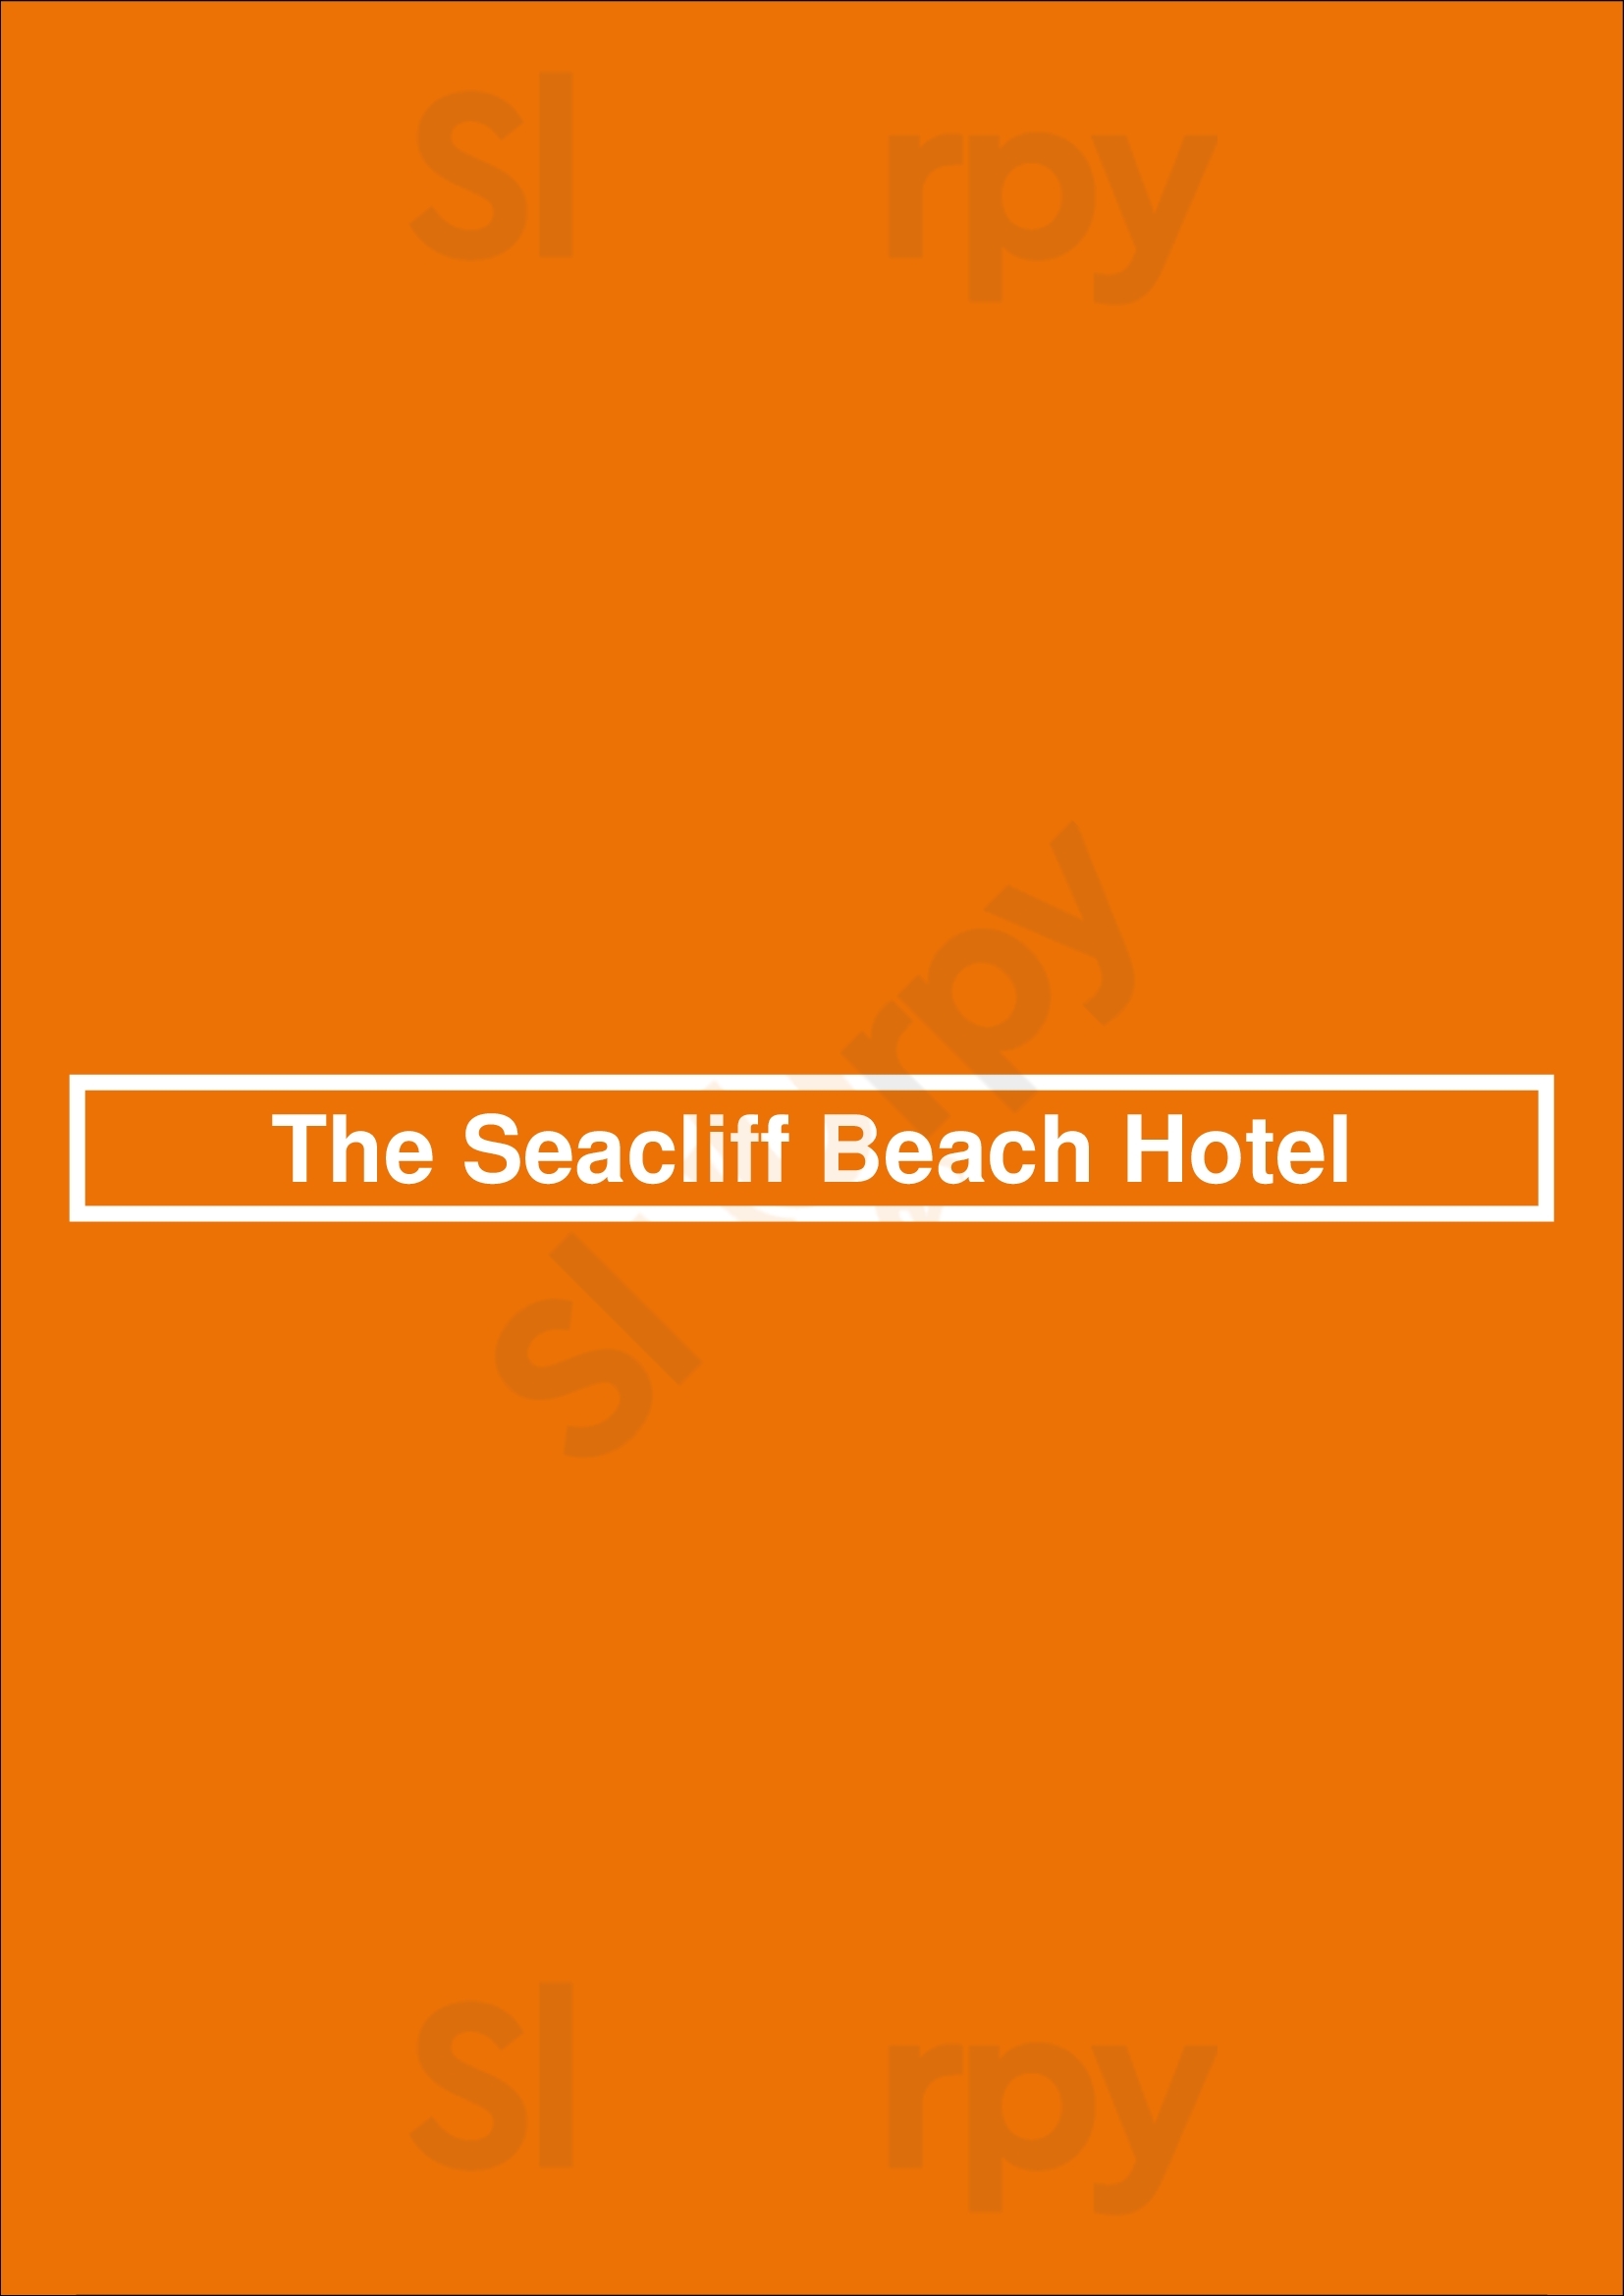 Seacliff Beach Hotel Adelaide Menu - 1